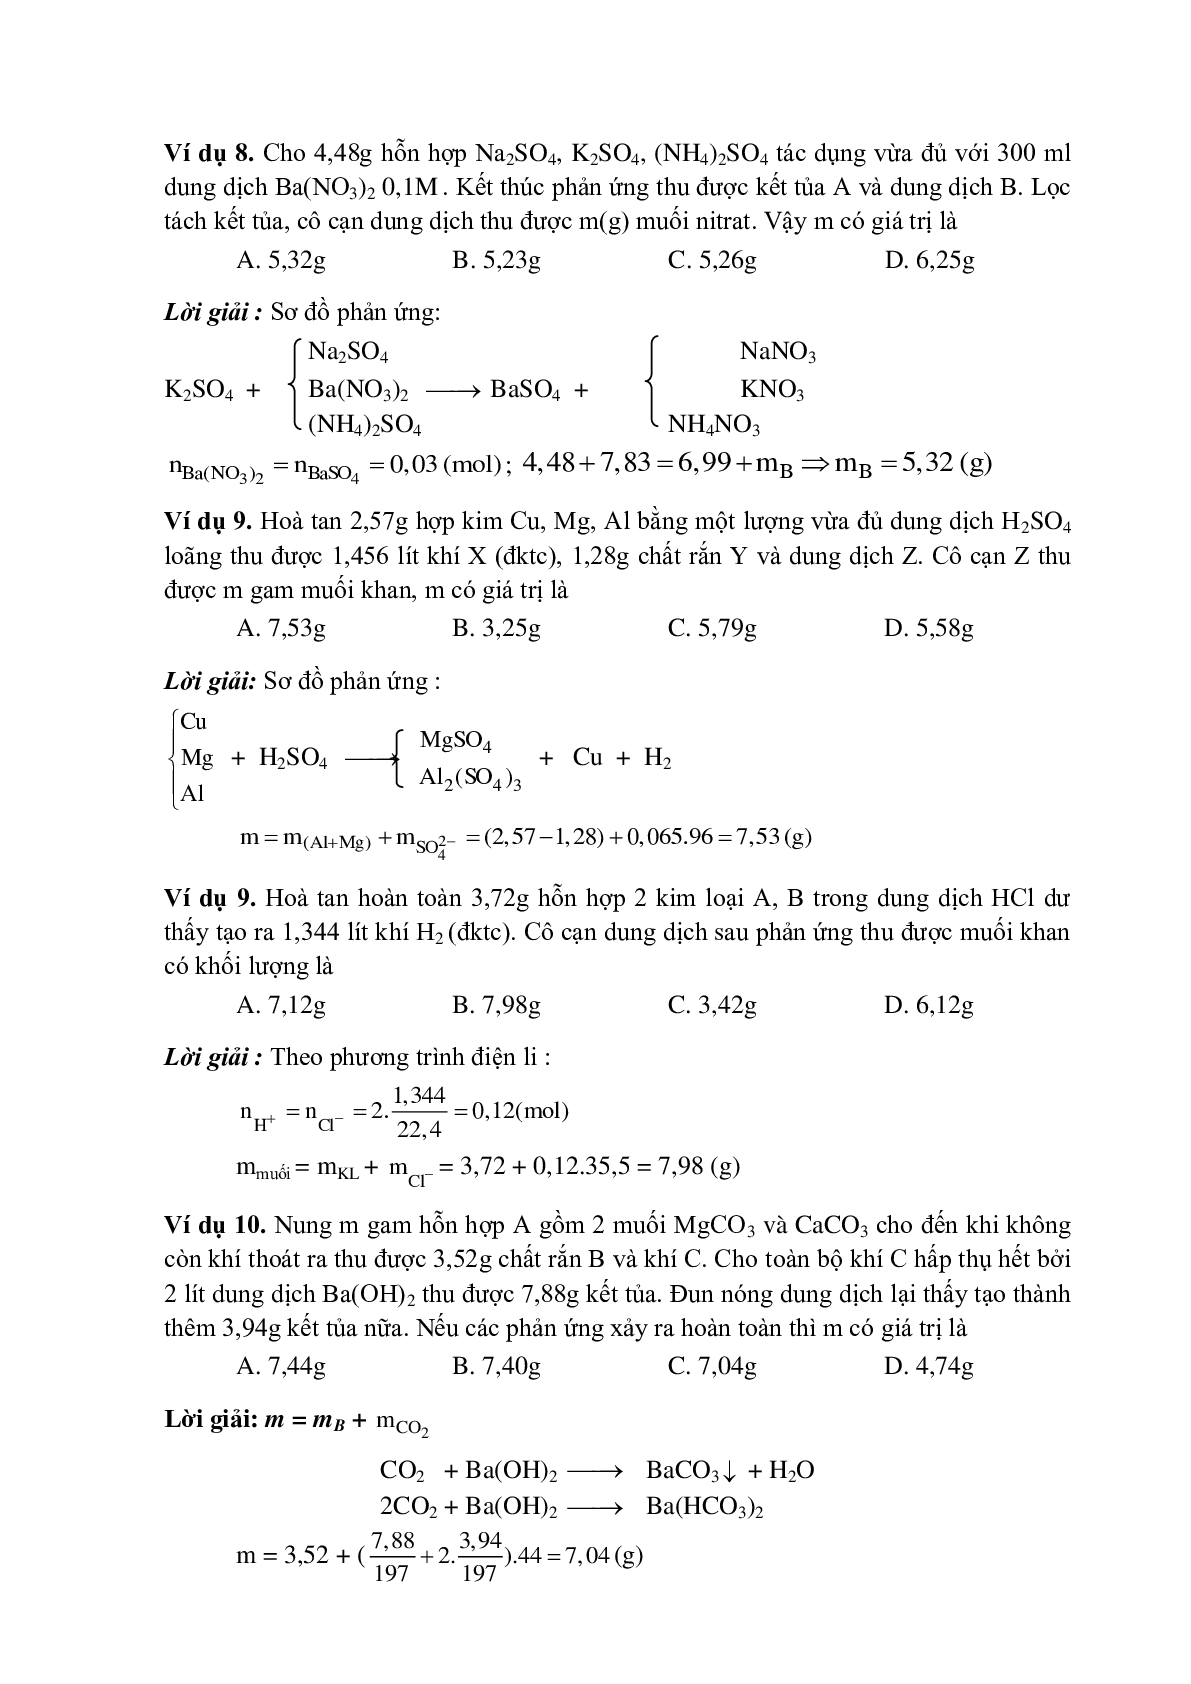 Lý thuyết, bài tập về Phương pháp bảo toàn khối lượng có đáp án (trang 4)